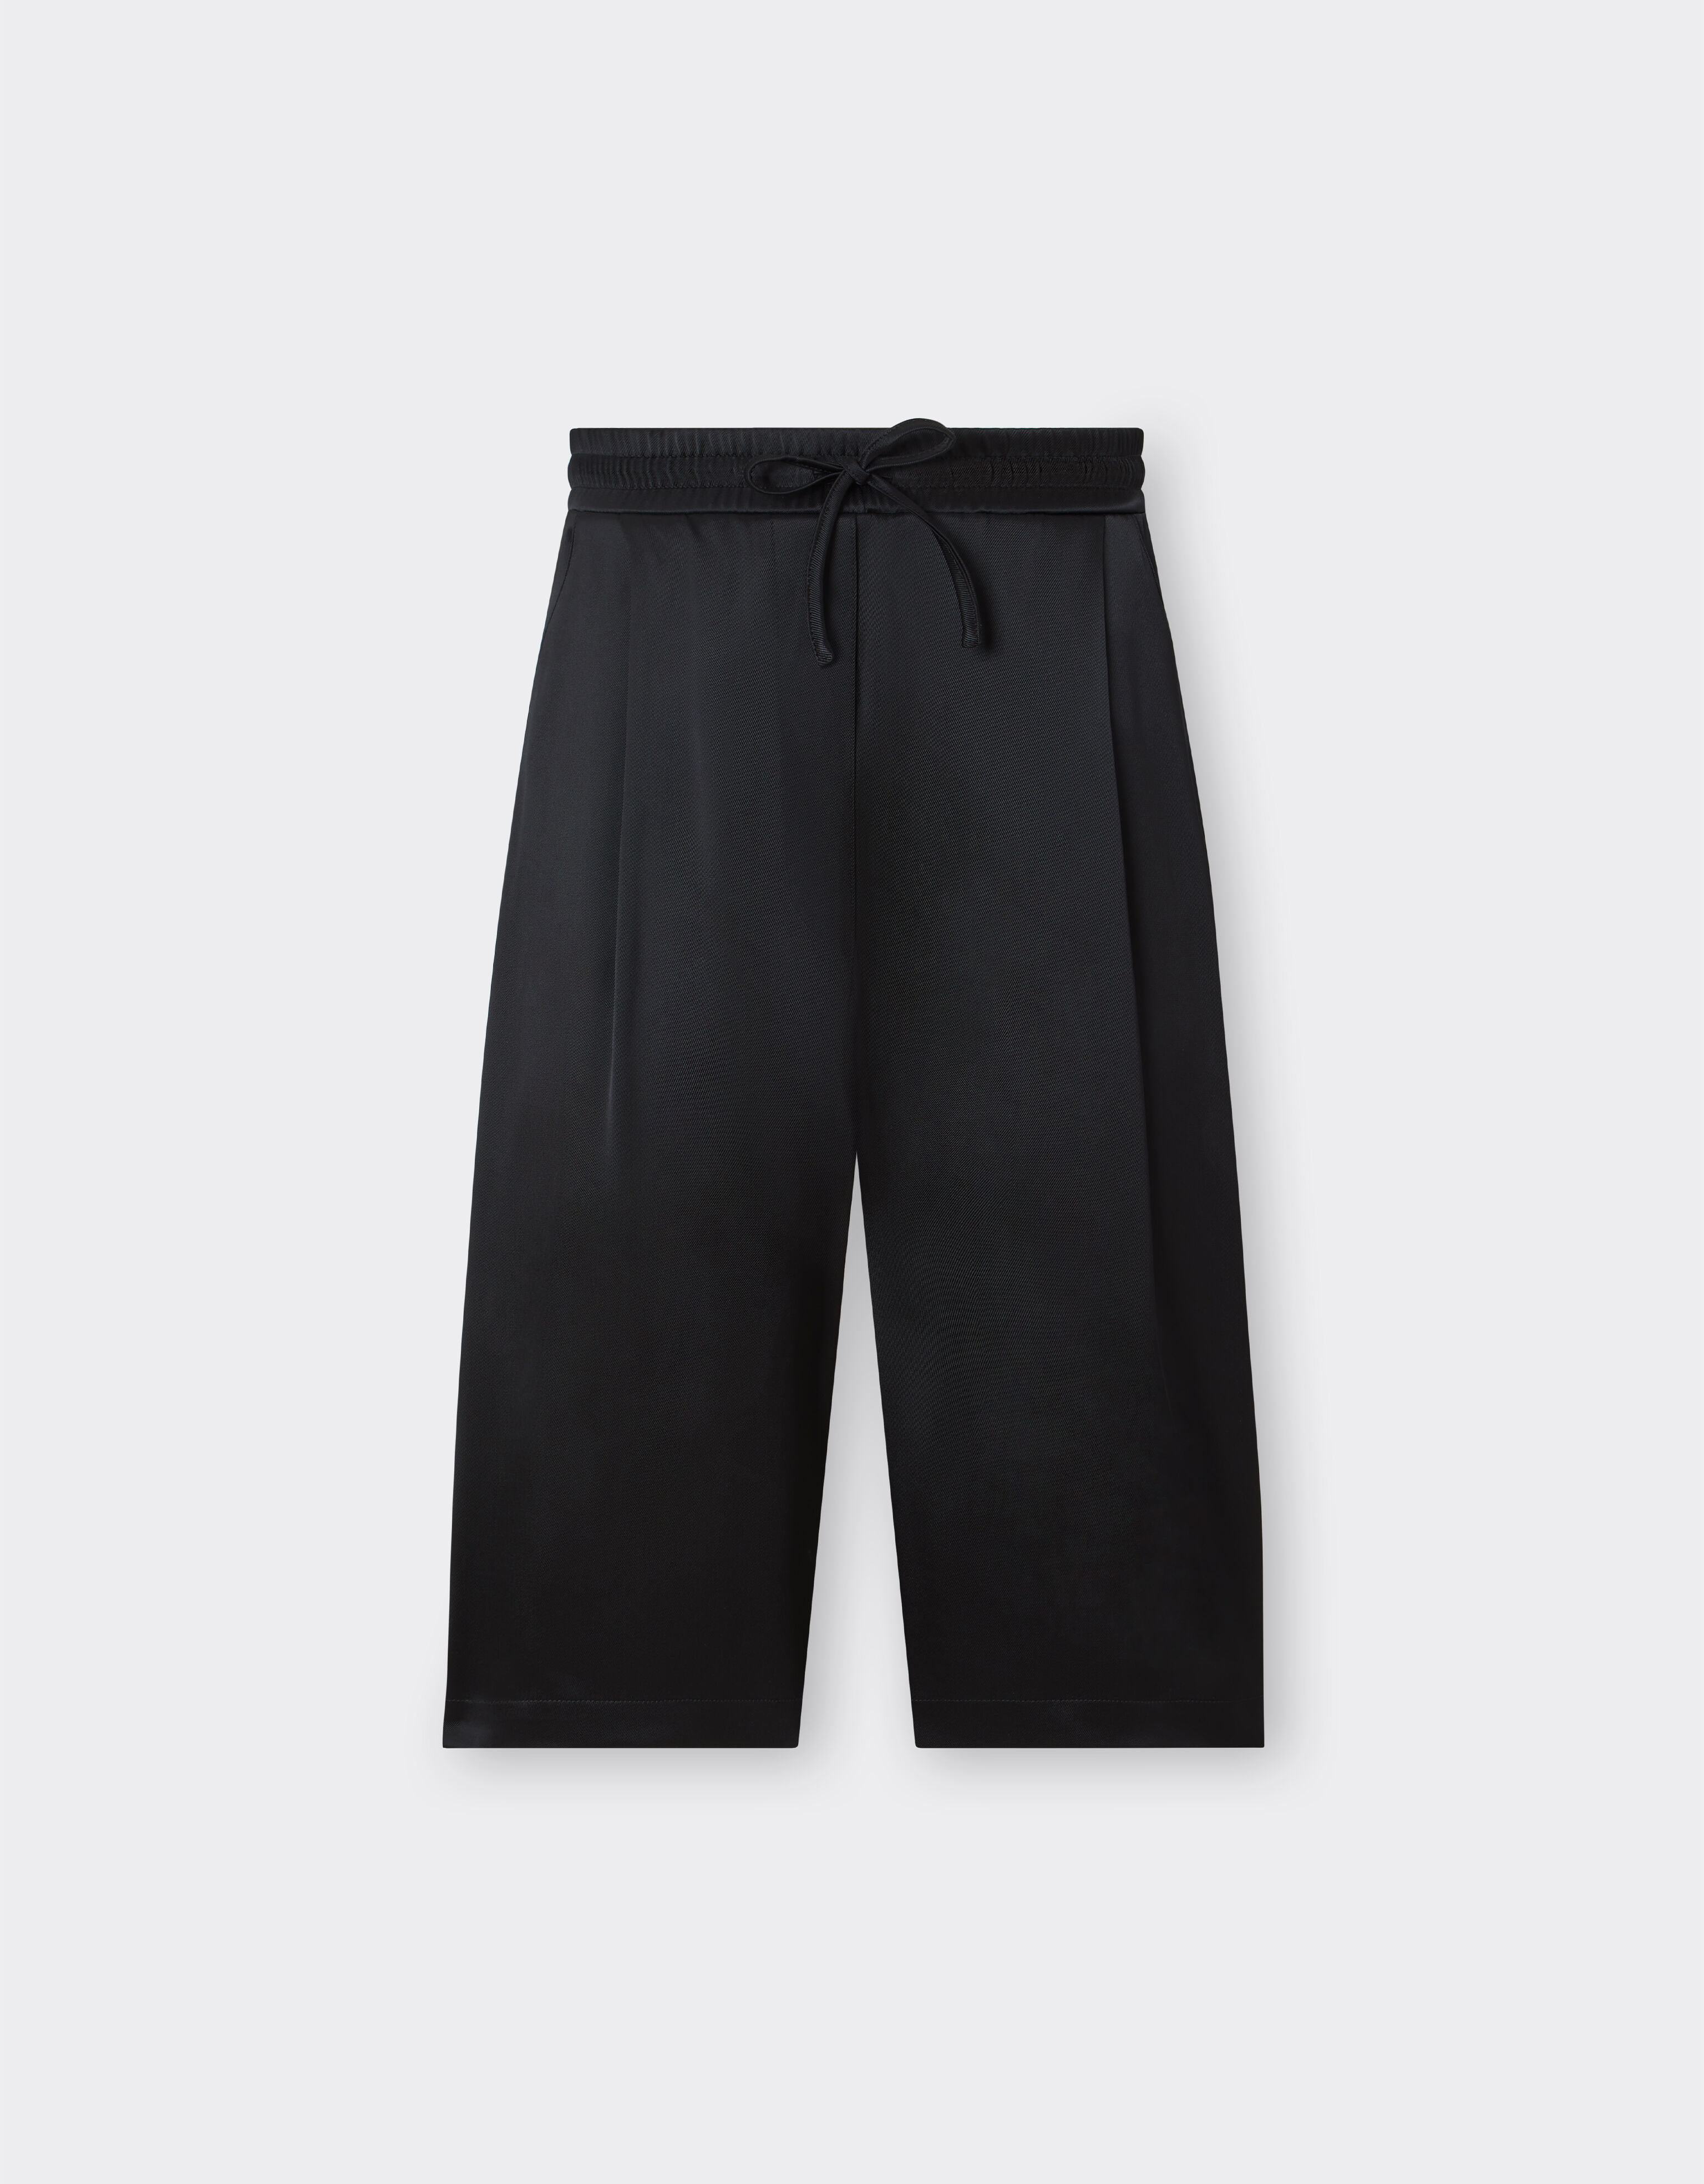 Ferrari Bermuda shorts in stretch fabric Black 48355f